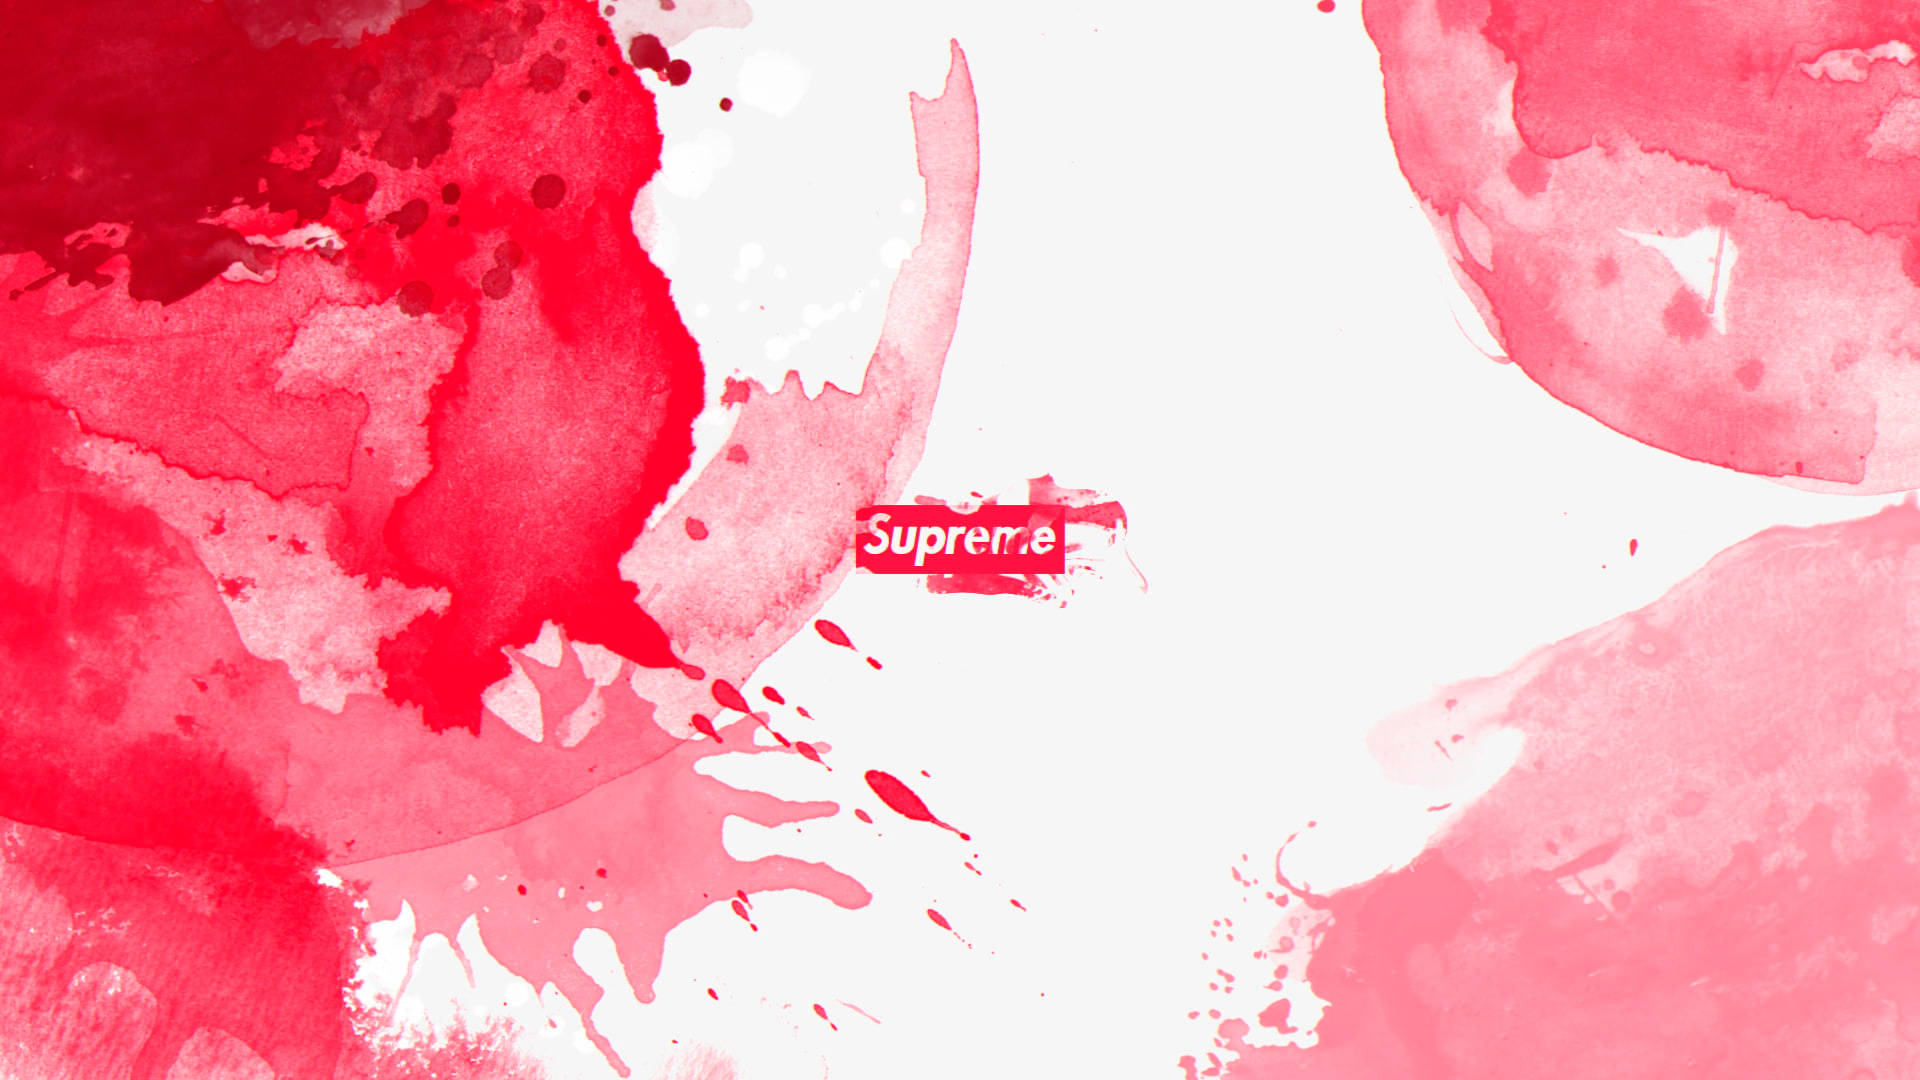 Supreme Pinkish Red Painting Desktop Wallpaper